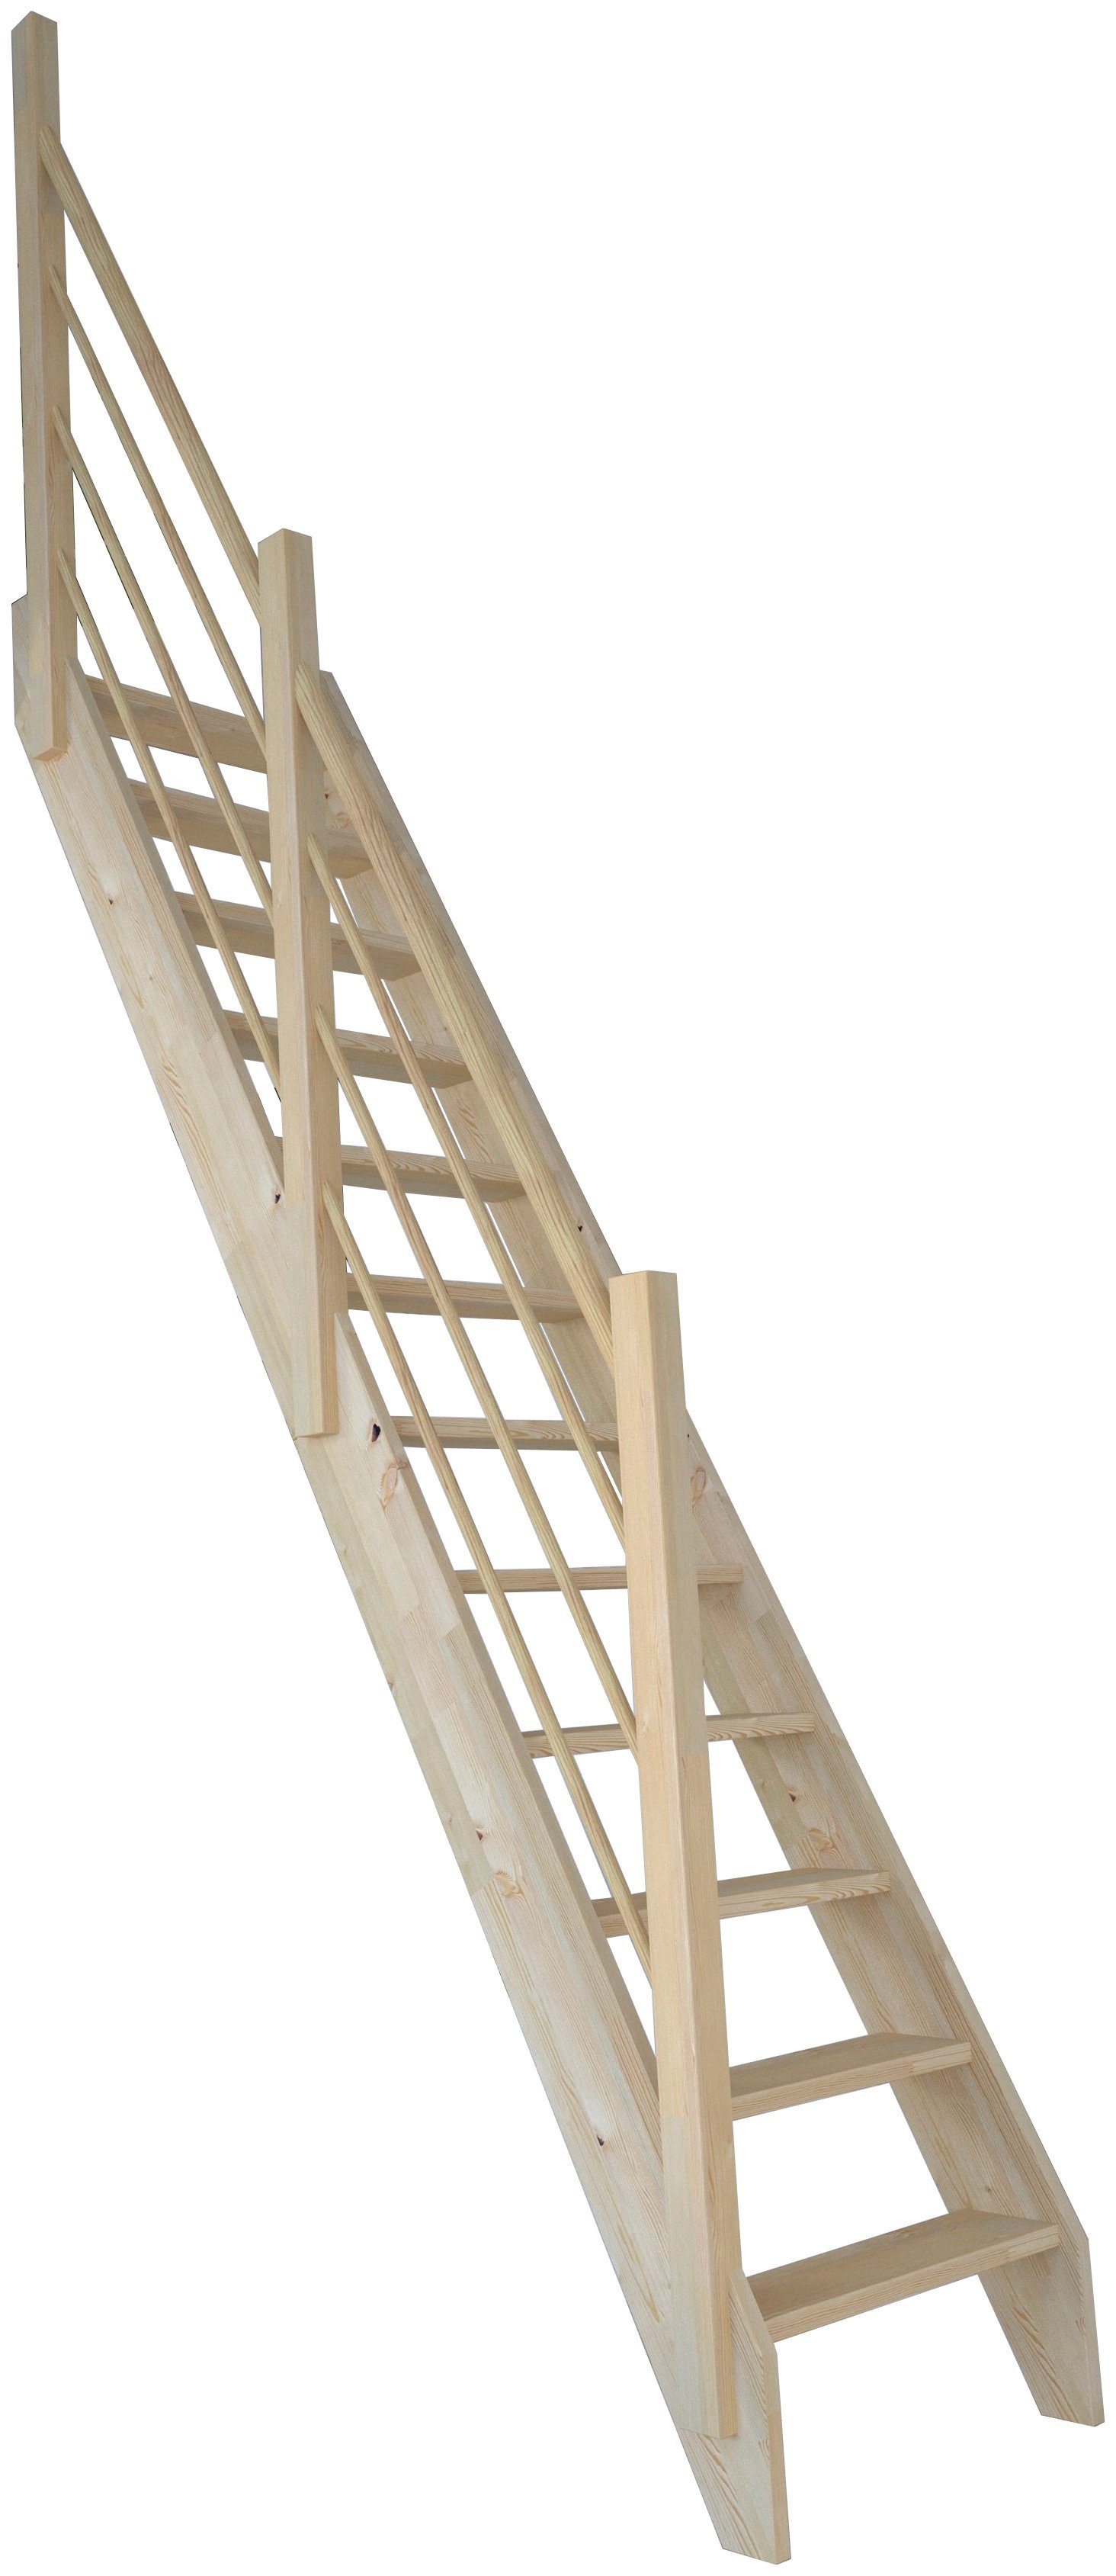 Links, Raumspartreppe Durchgehende offen, Design 2000/3000, Geländer Stufen Starwood Fichte Wangenteile Holz-Holz